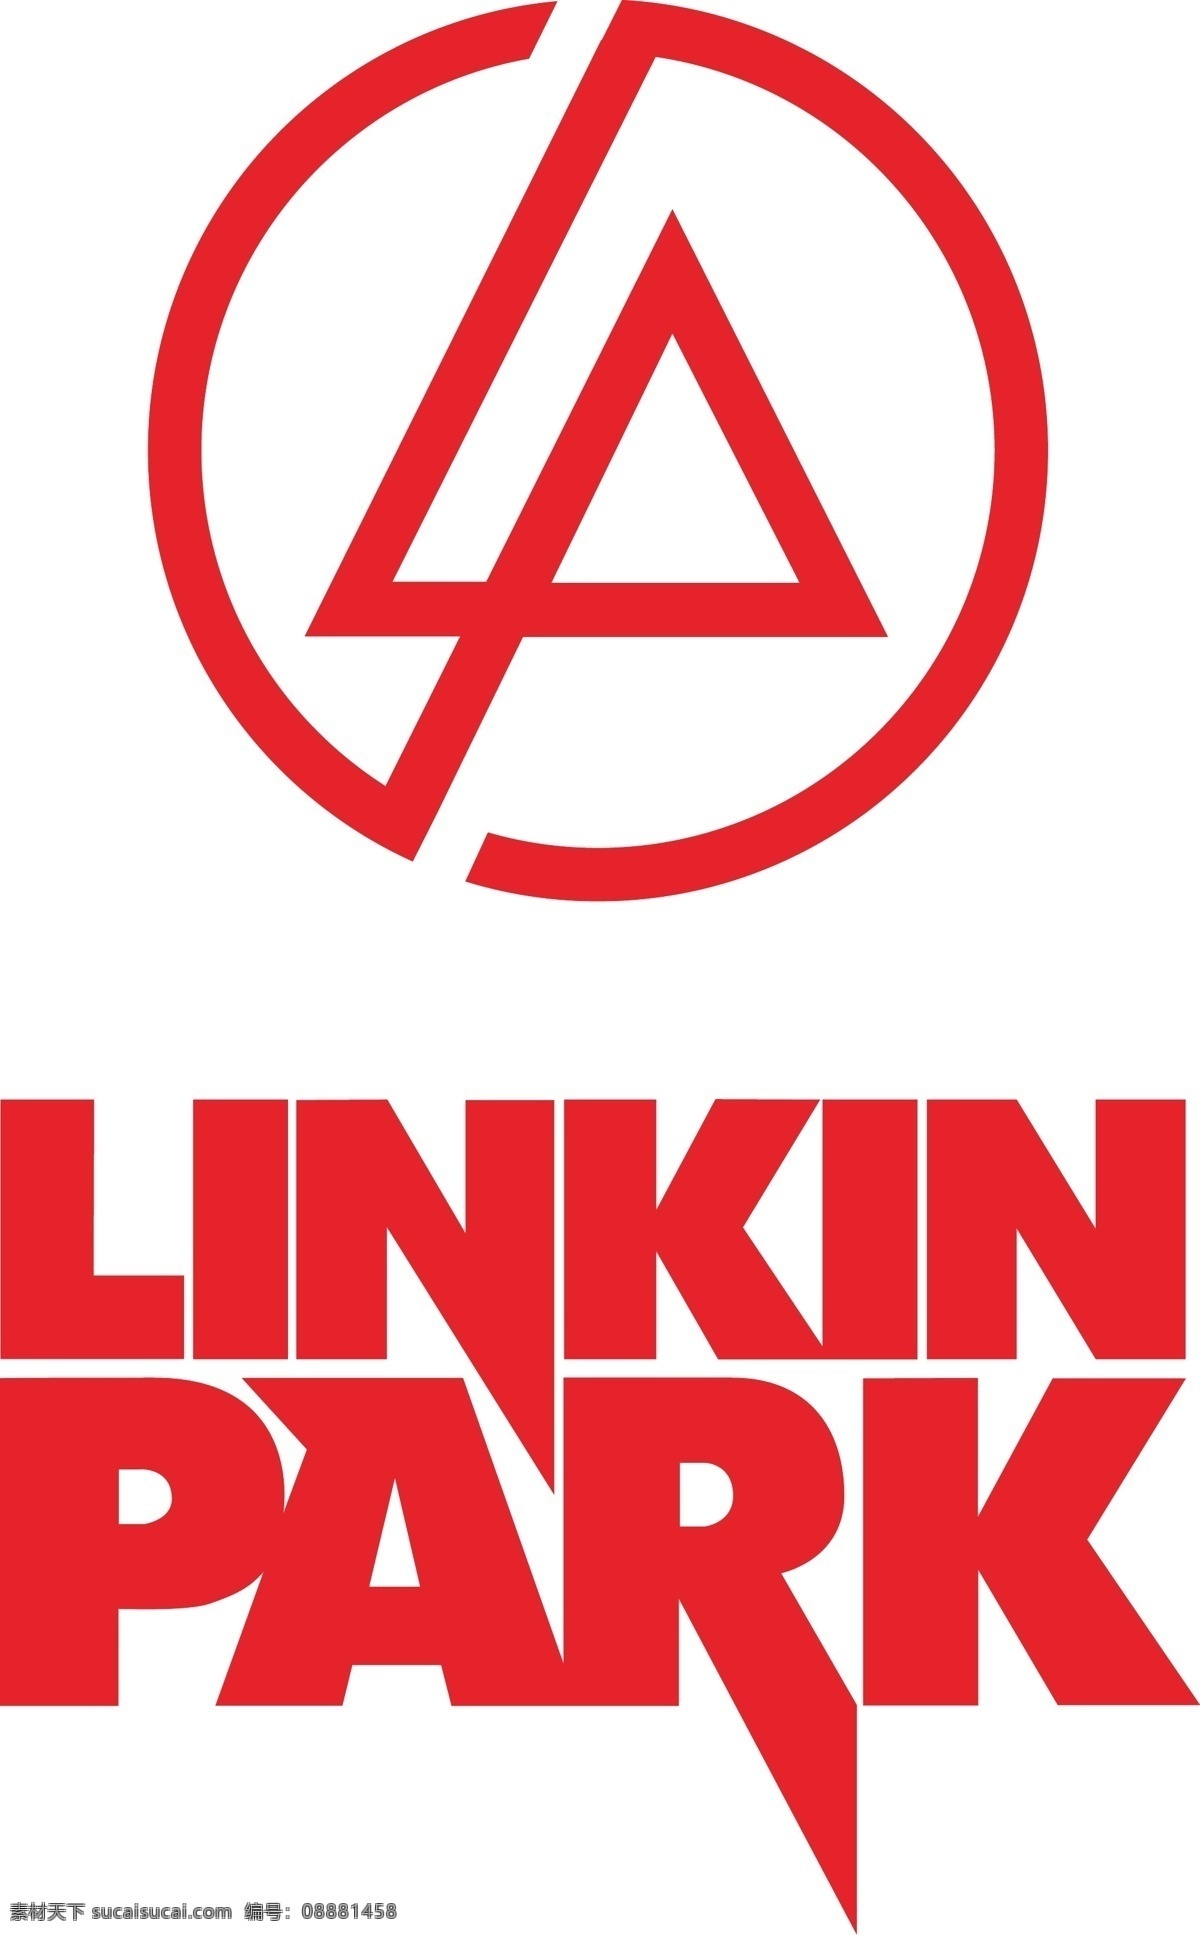 林肯公园 linkinpark 林肯公园标志 林肯公园乐队 影视娱乐 文化艺术 矢量